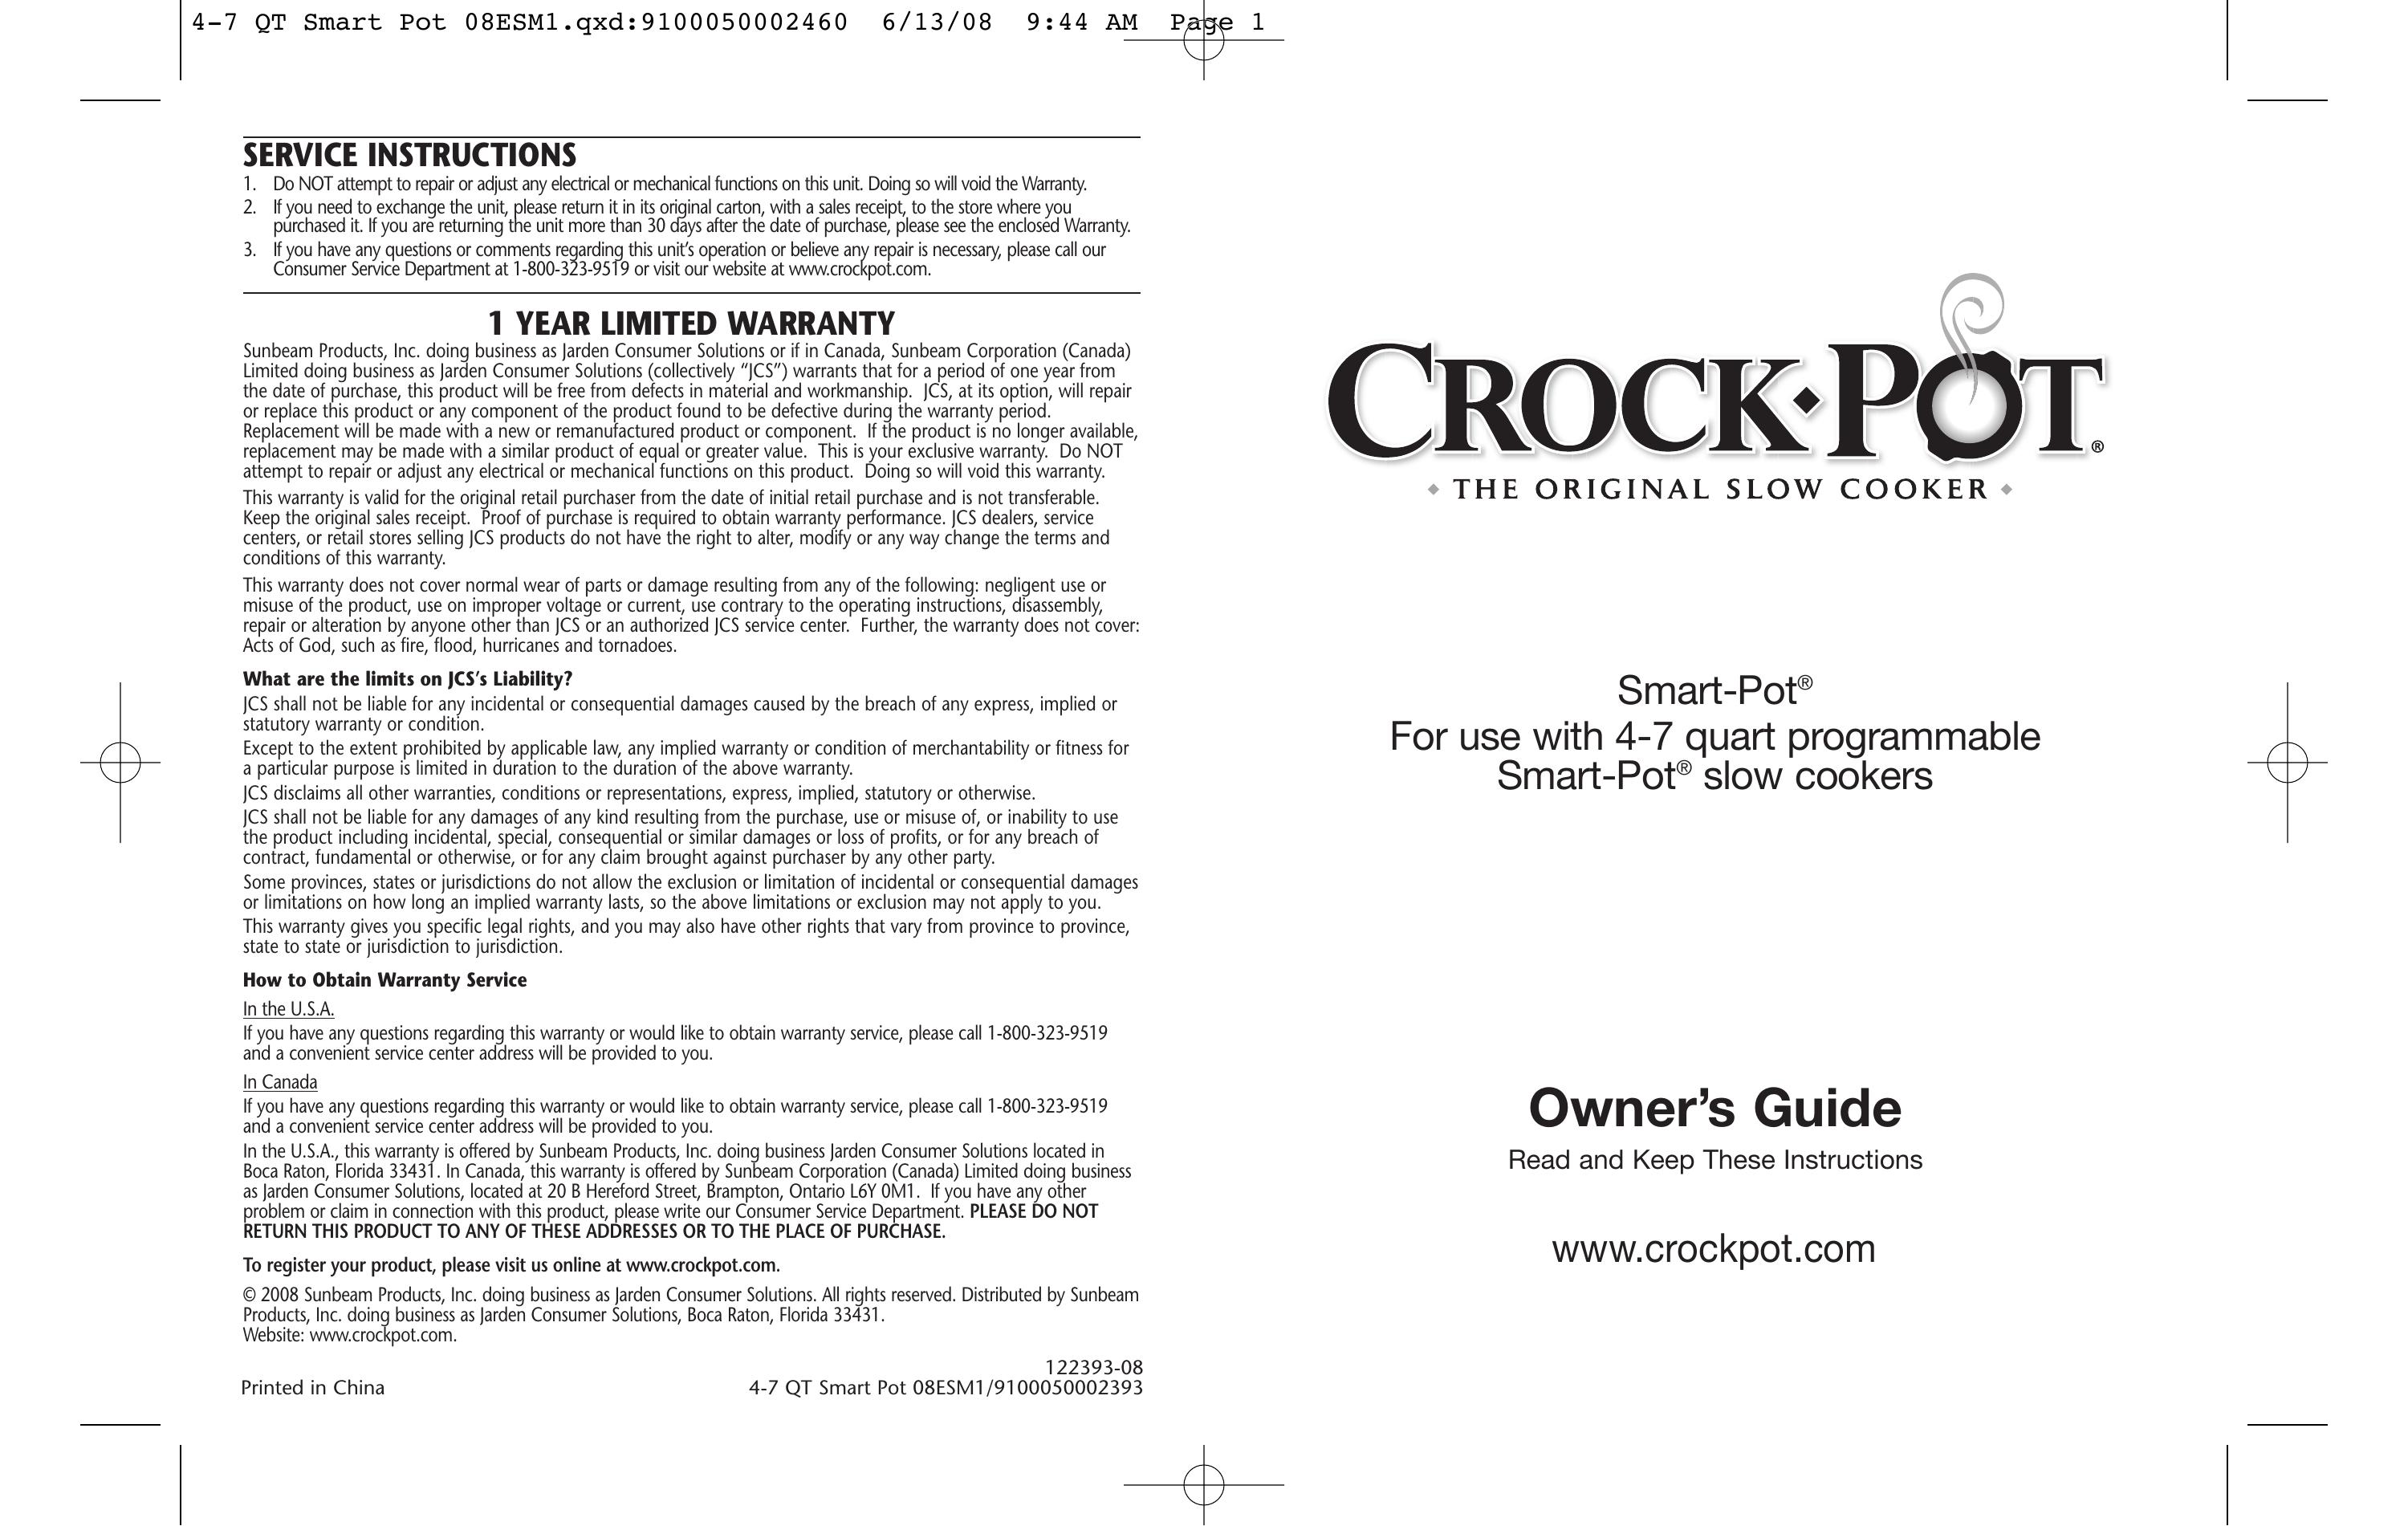 Crock-Pot Smart-Pot 4-7 Quart Slow Cooker User Manual